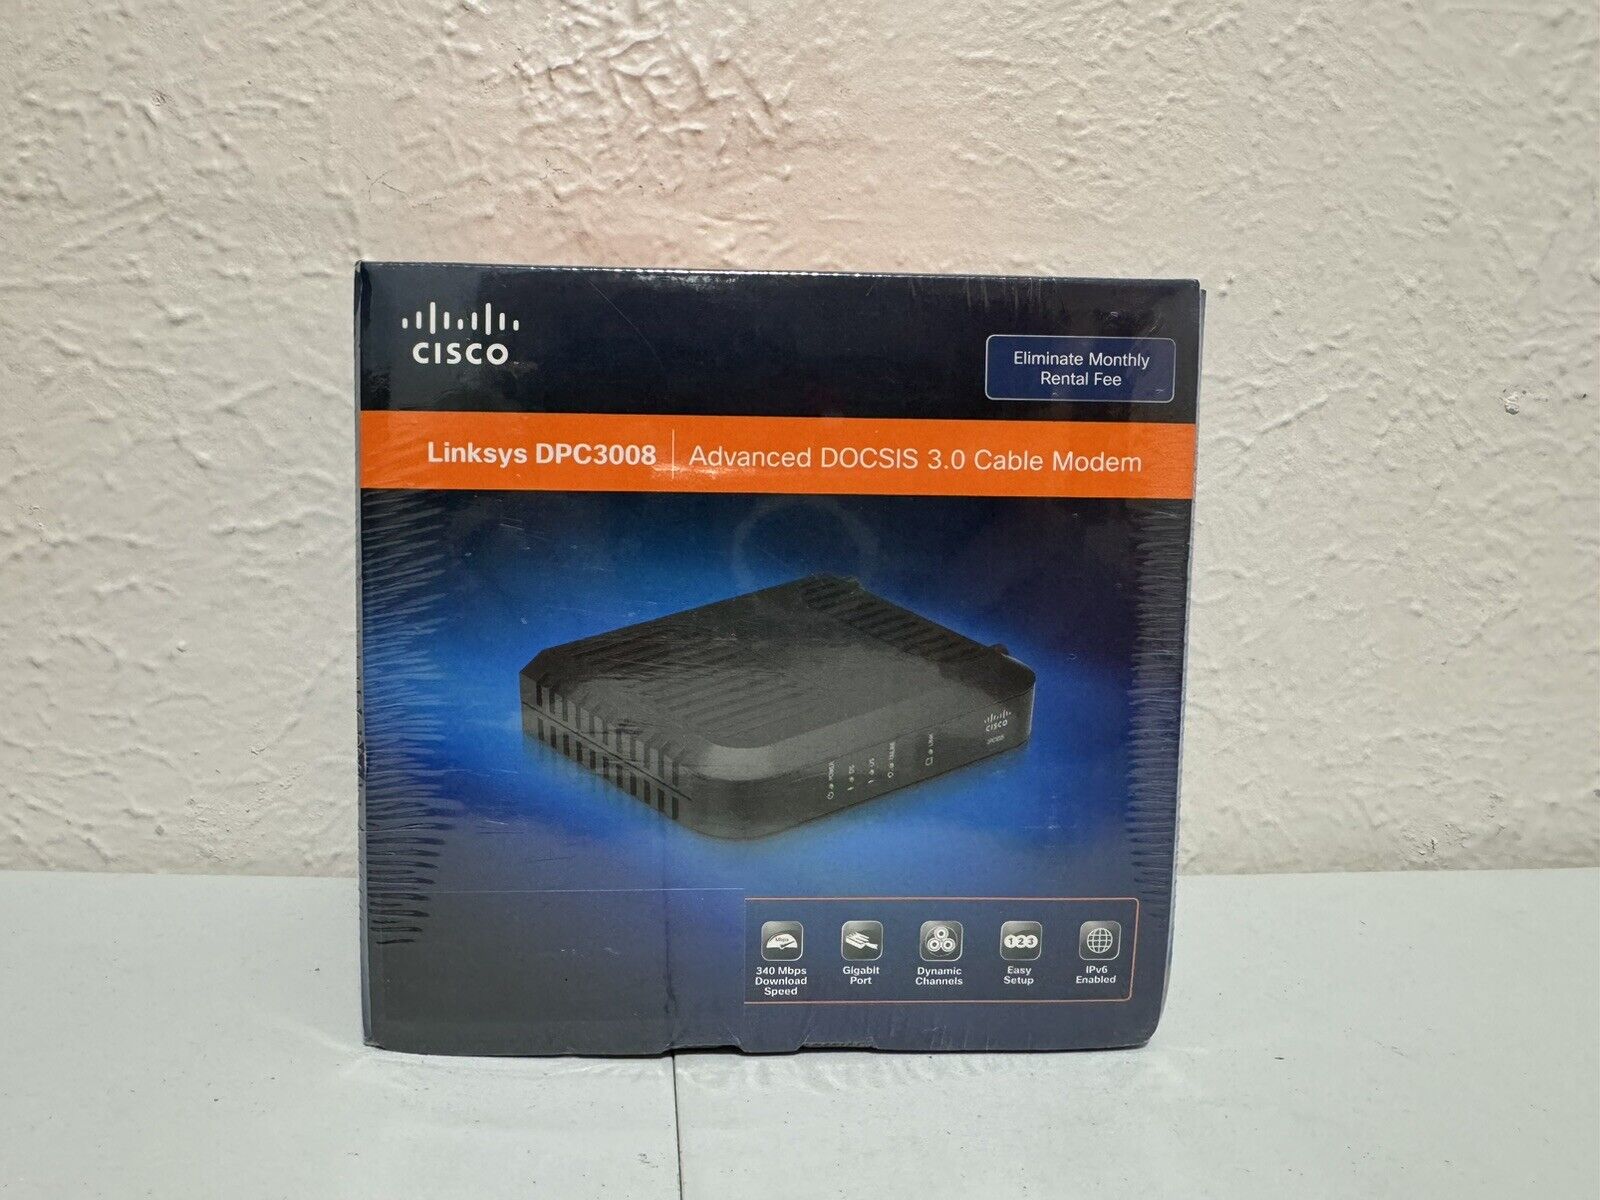 Cisco Linksys DPC3008 DOCSIS 3.0 Cable Modem